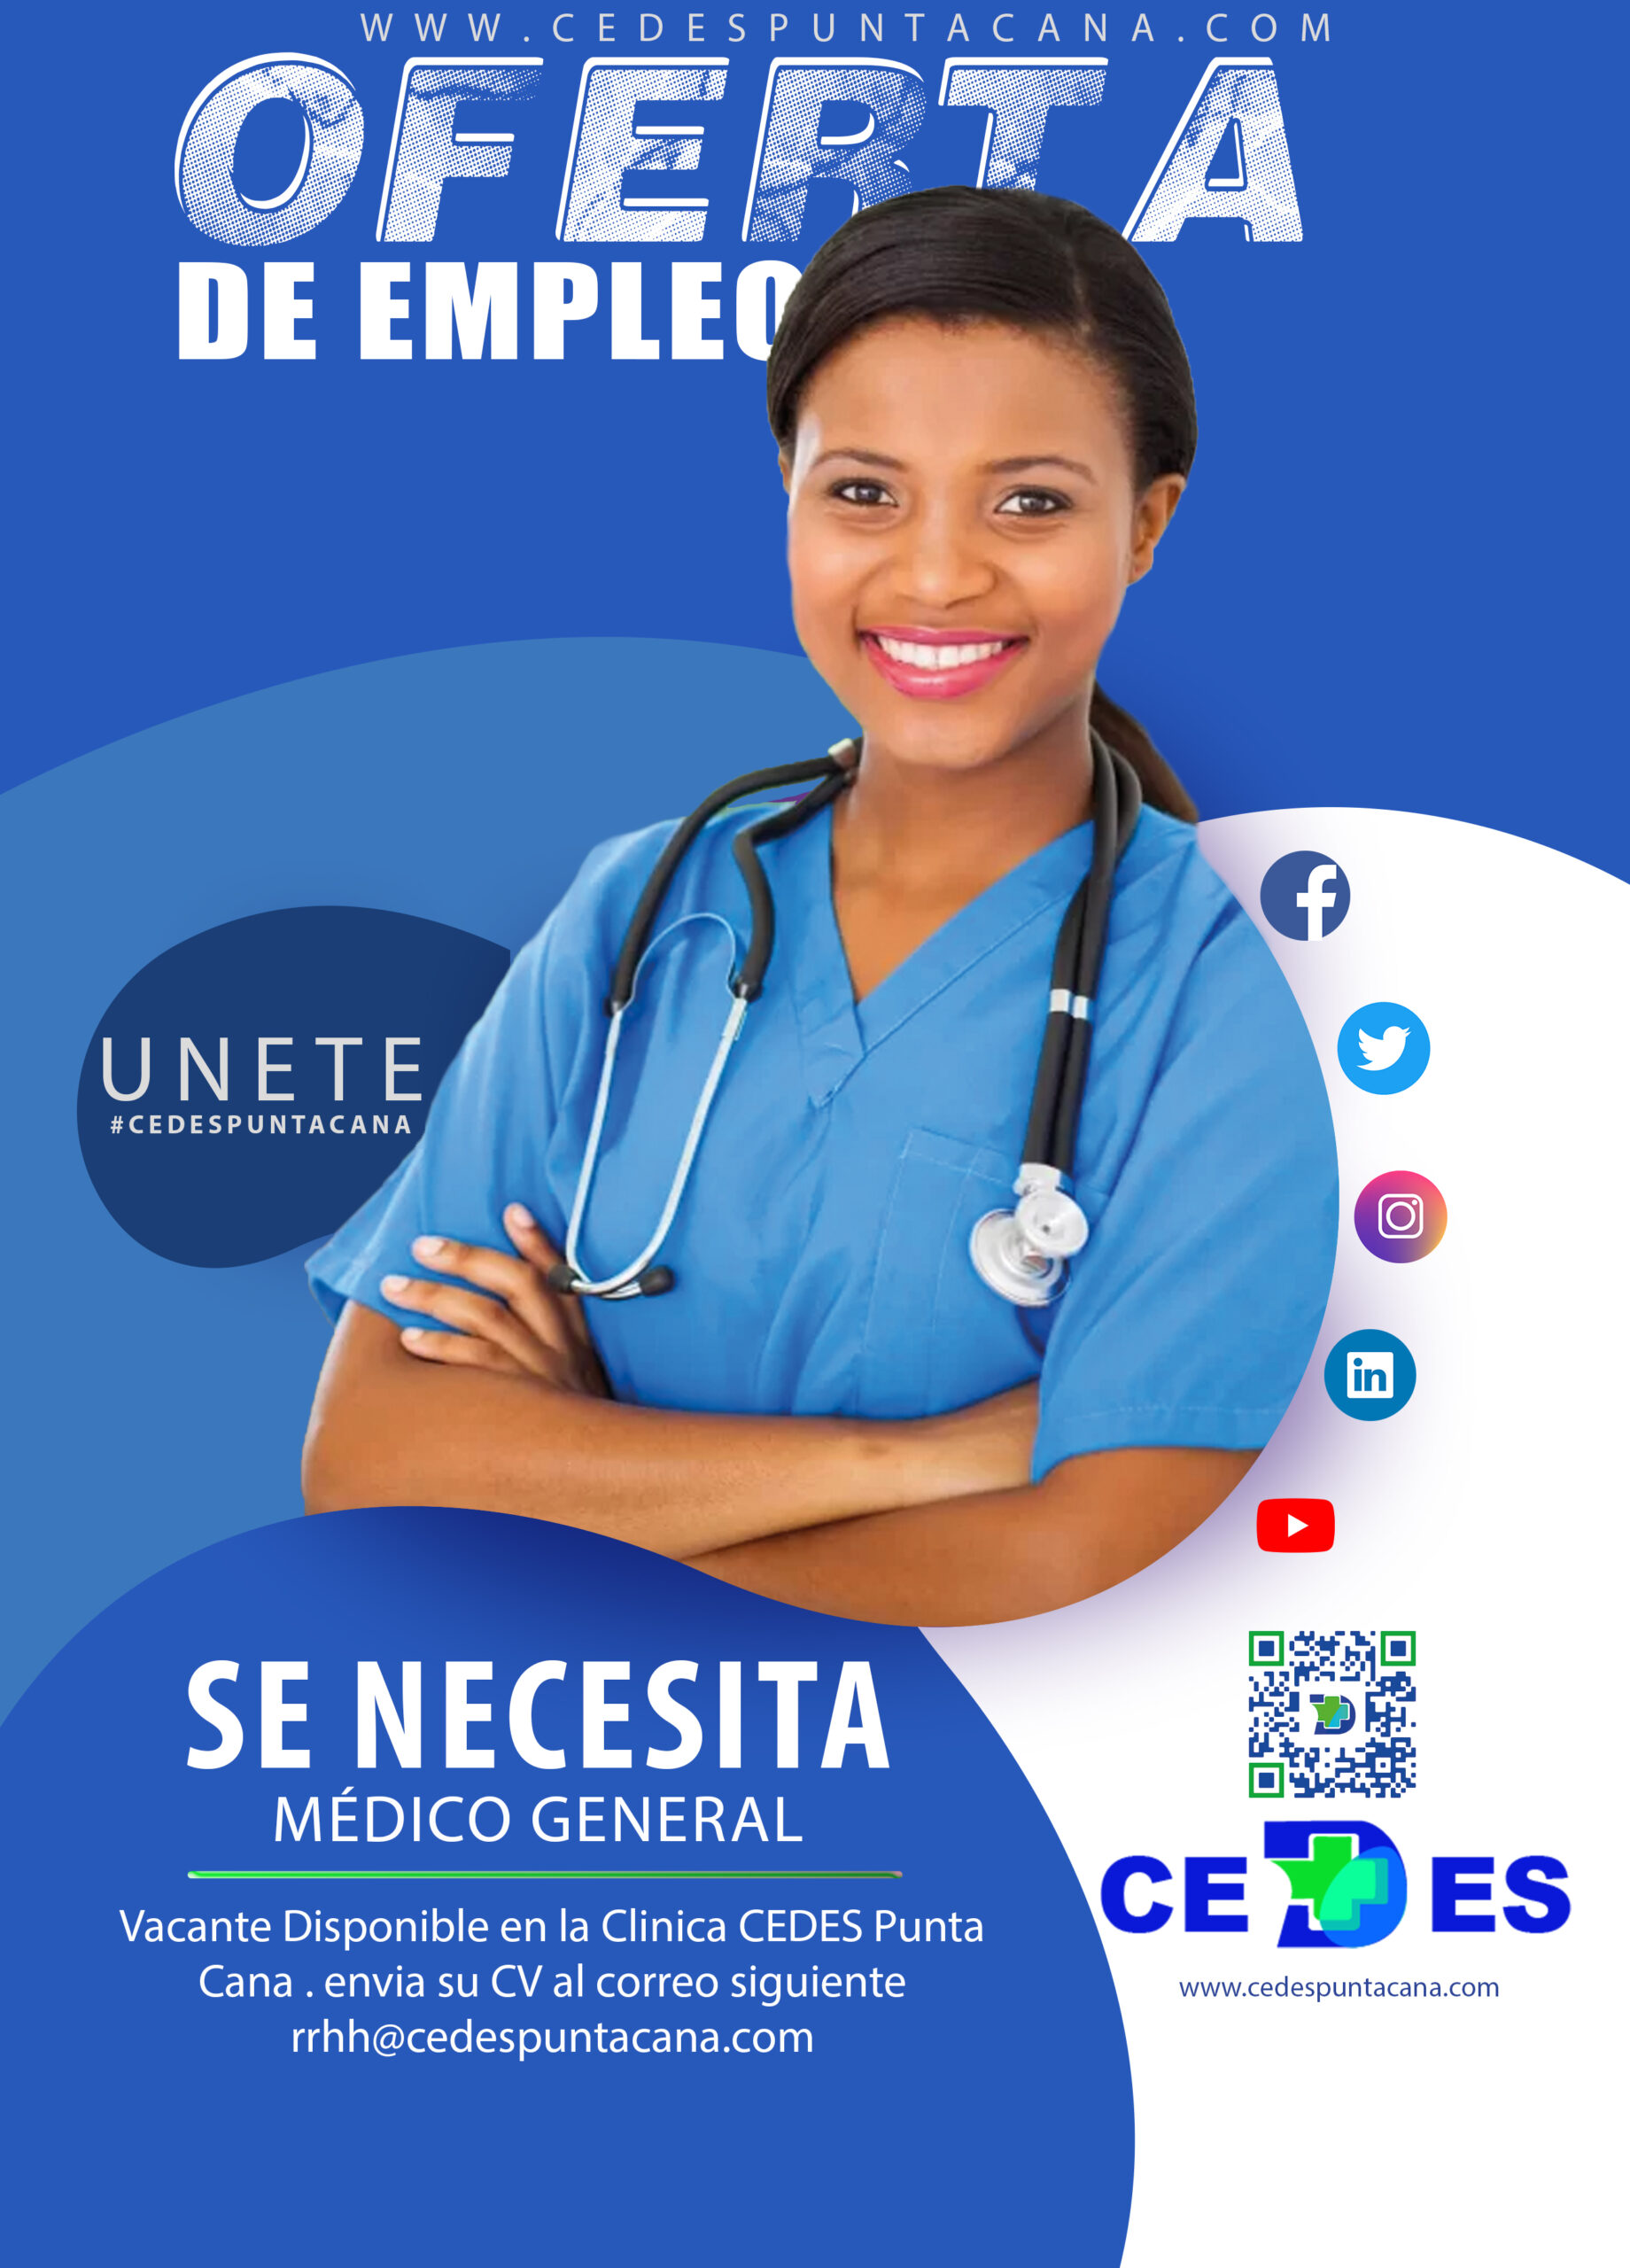 Oferta de Trabajo: Médico General en Centro Médico CEDES Punta Cana